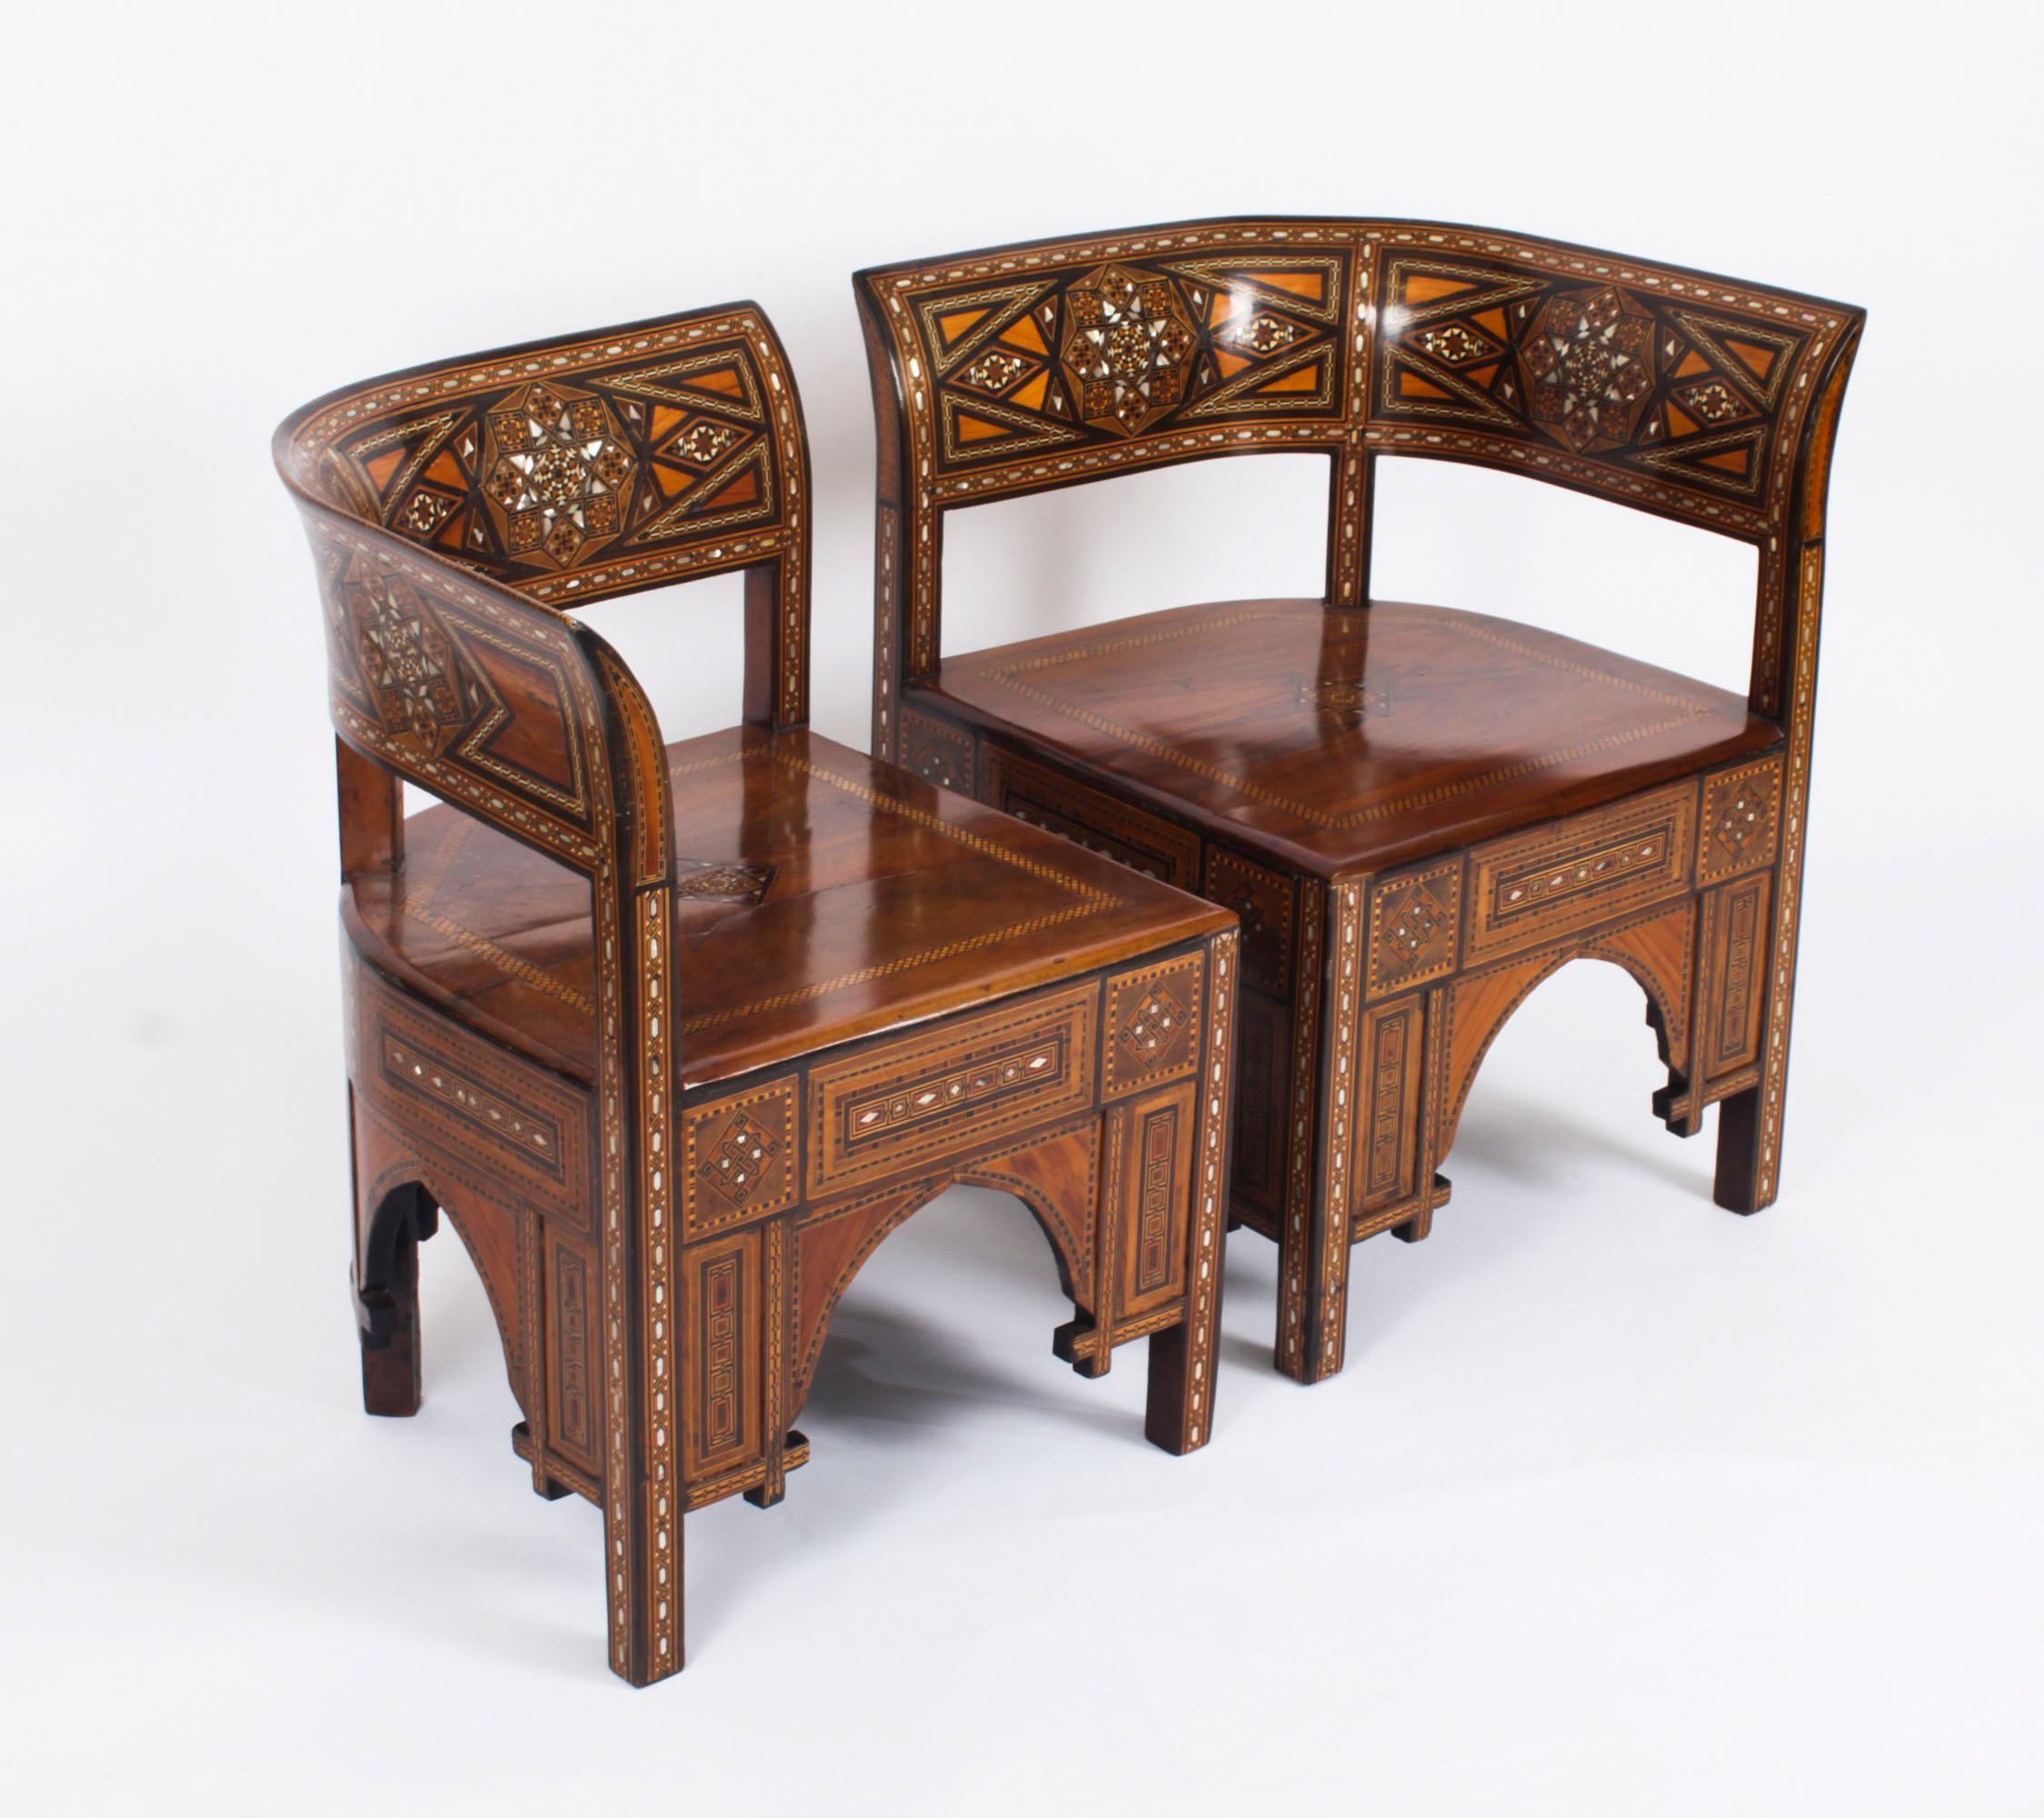 Superbe paire de fauteuils syriens en damas, datant d'environ 1900.

Cette paire de fauteuils en parquet est délicieusement fabriquée en bois dur avec de merveilleuses couleurs.  Ils sont ornés d'un décor marqueté composé d'ébène, de noyer et de